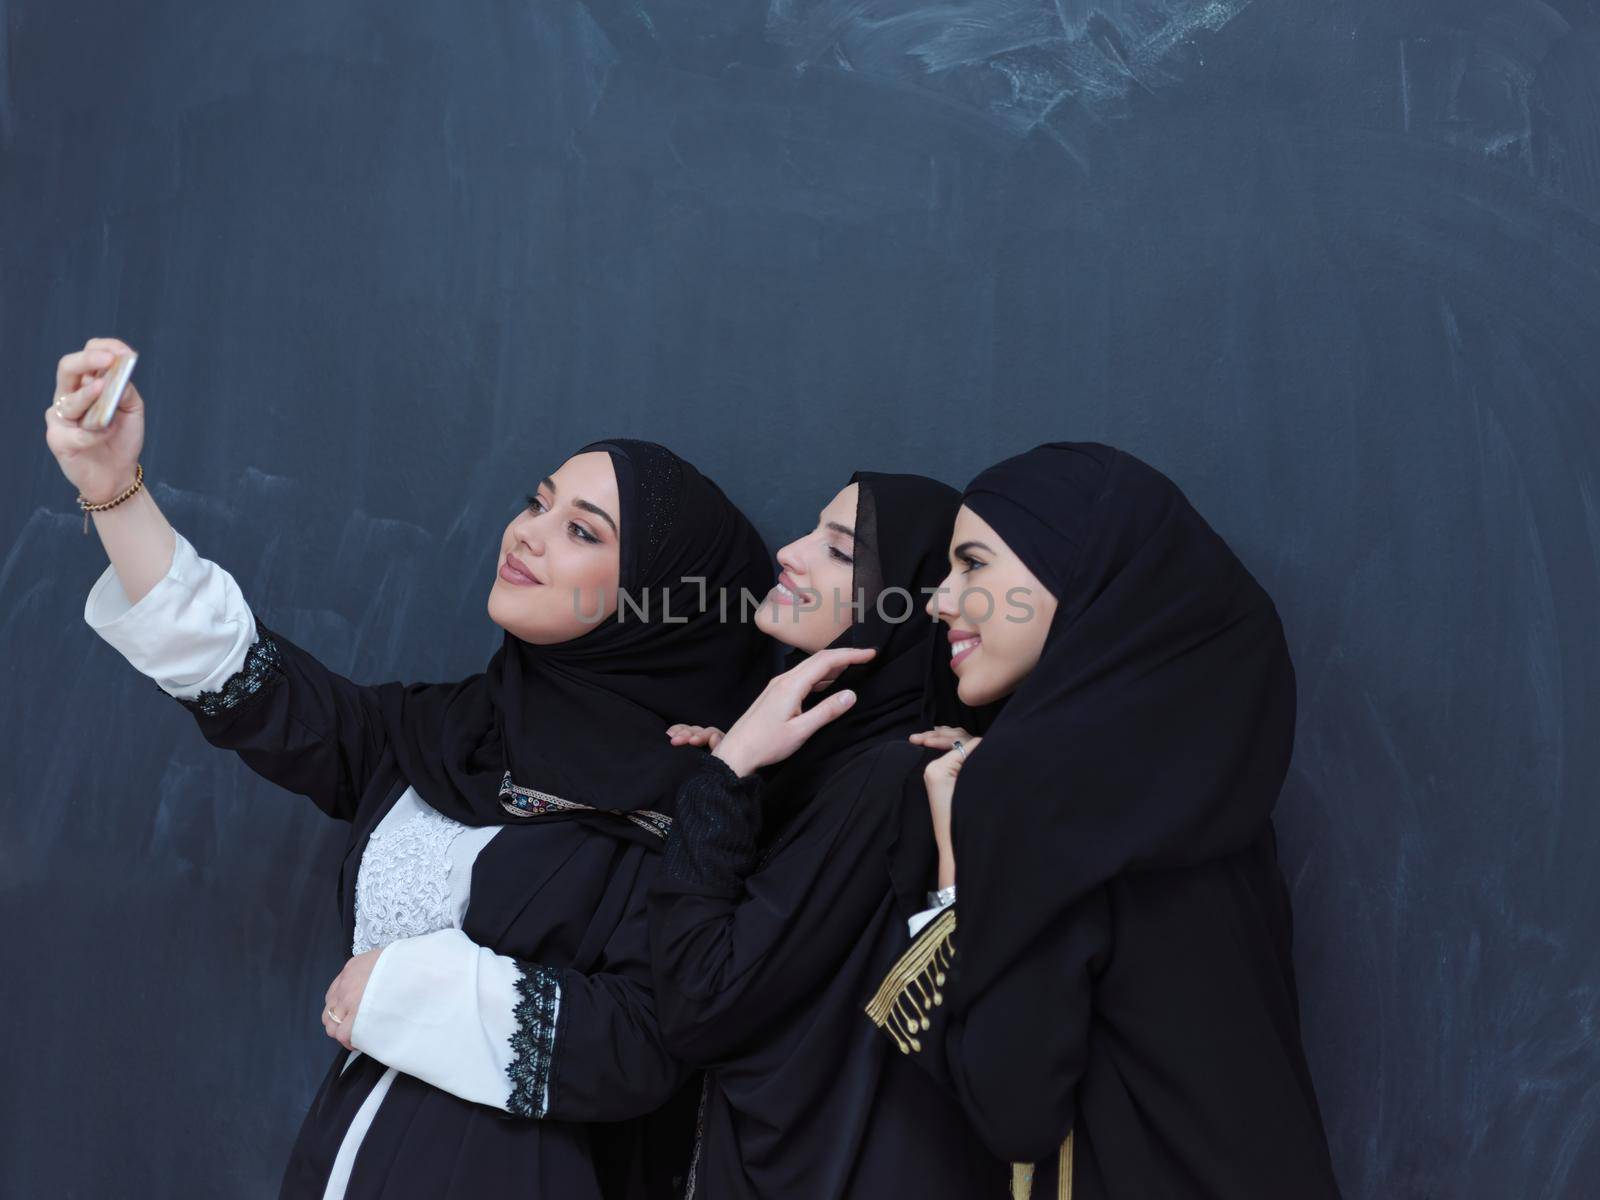 muslim women taking selfie picture in front of black chalkboard by dotshock